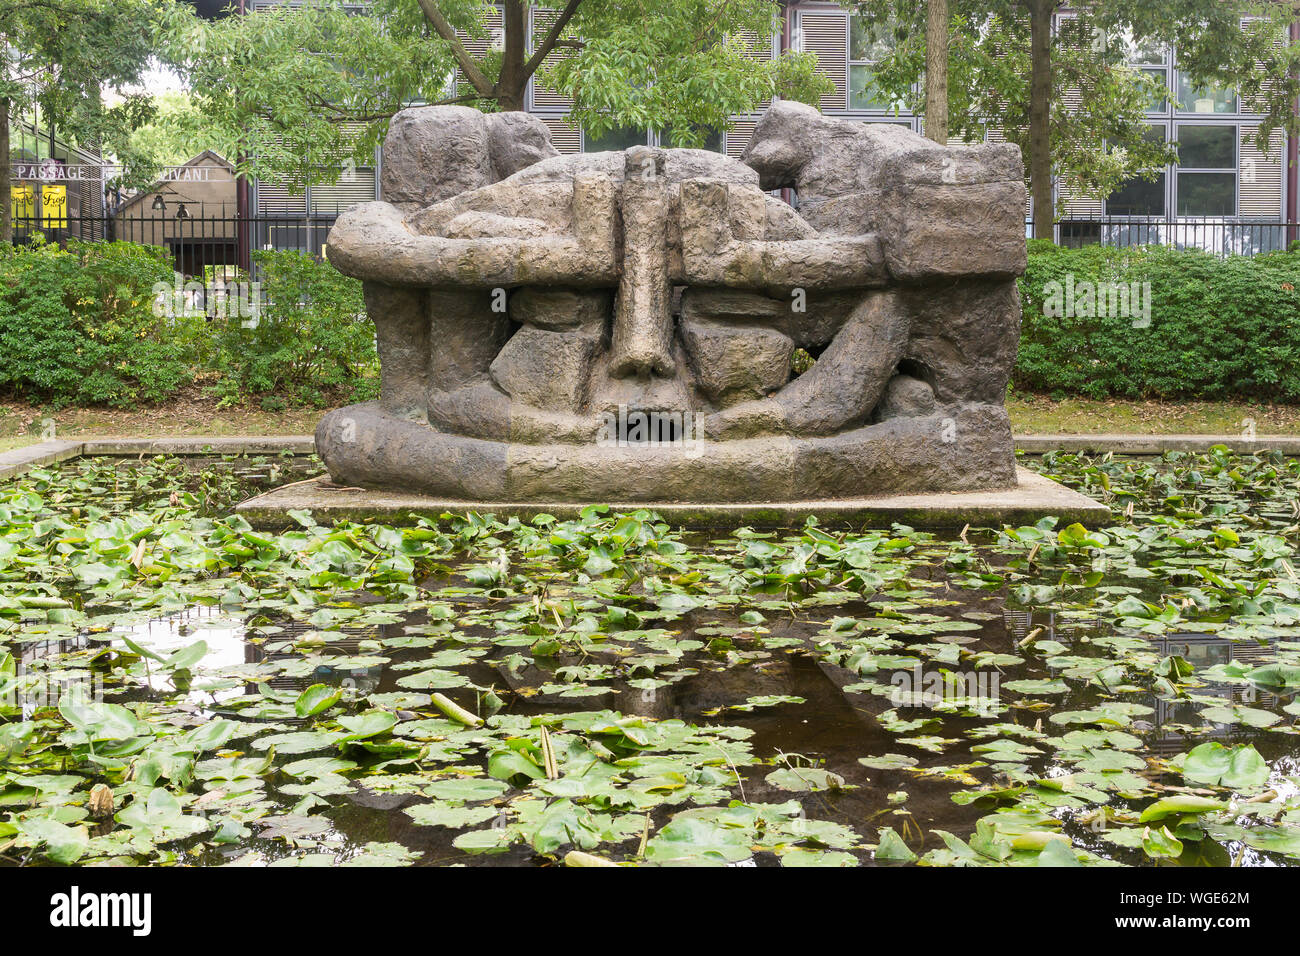 Paris Skulptur - La Demeure X Skulptur von Etienne Martin in der Nähe von einem kleinen Teich im Park von Bercy im 12. arrondissement von Paris, Frankreich, Europ. Stockfoto